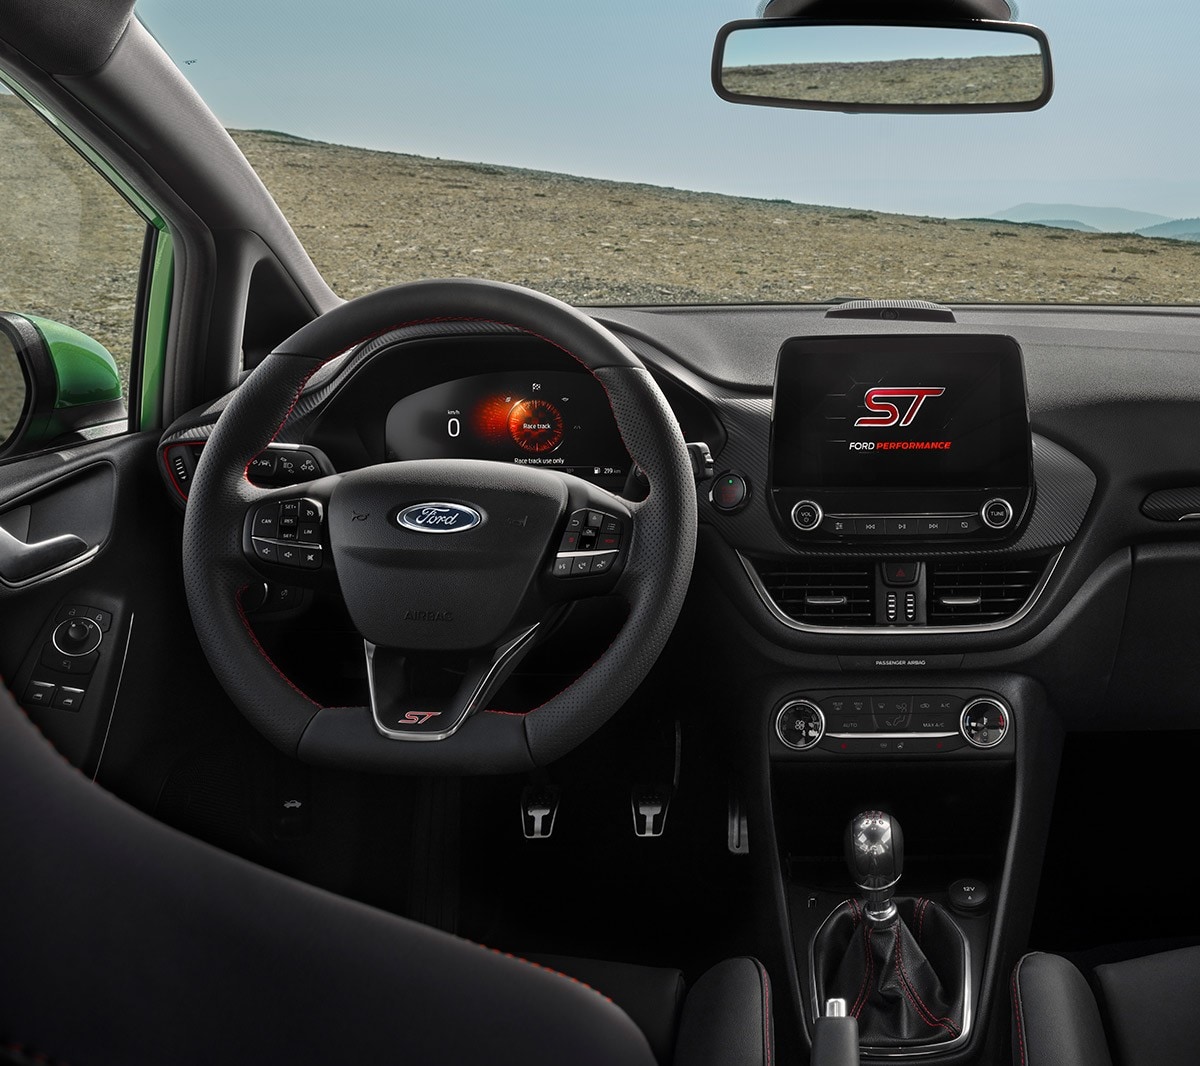 Ford Fiesta ST. Vista interna sul cockpit con volante, touchscreen e quadro strumenti digitale.